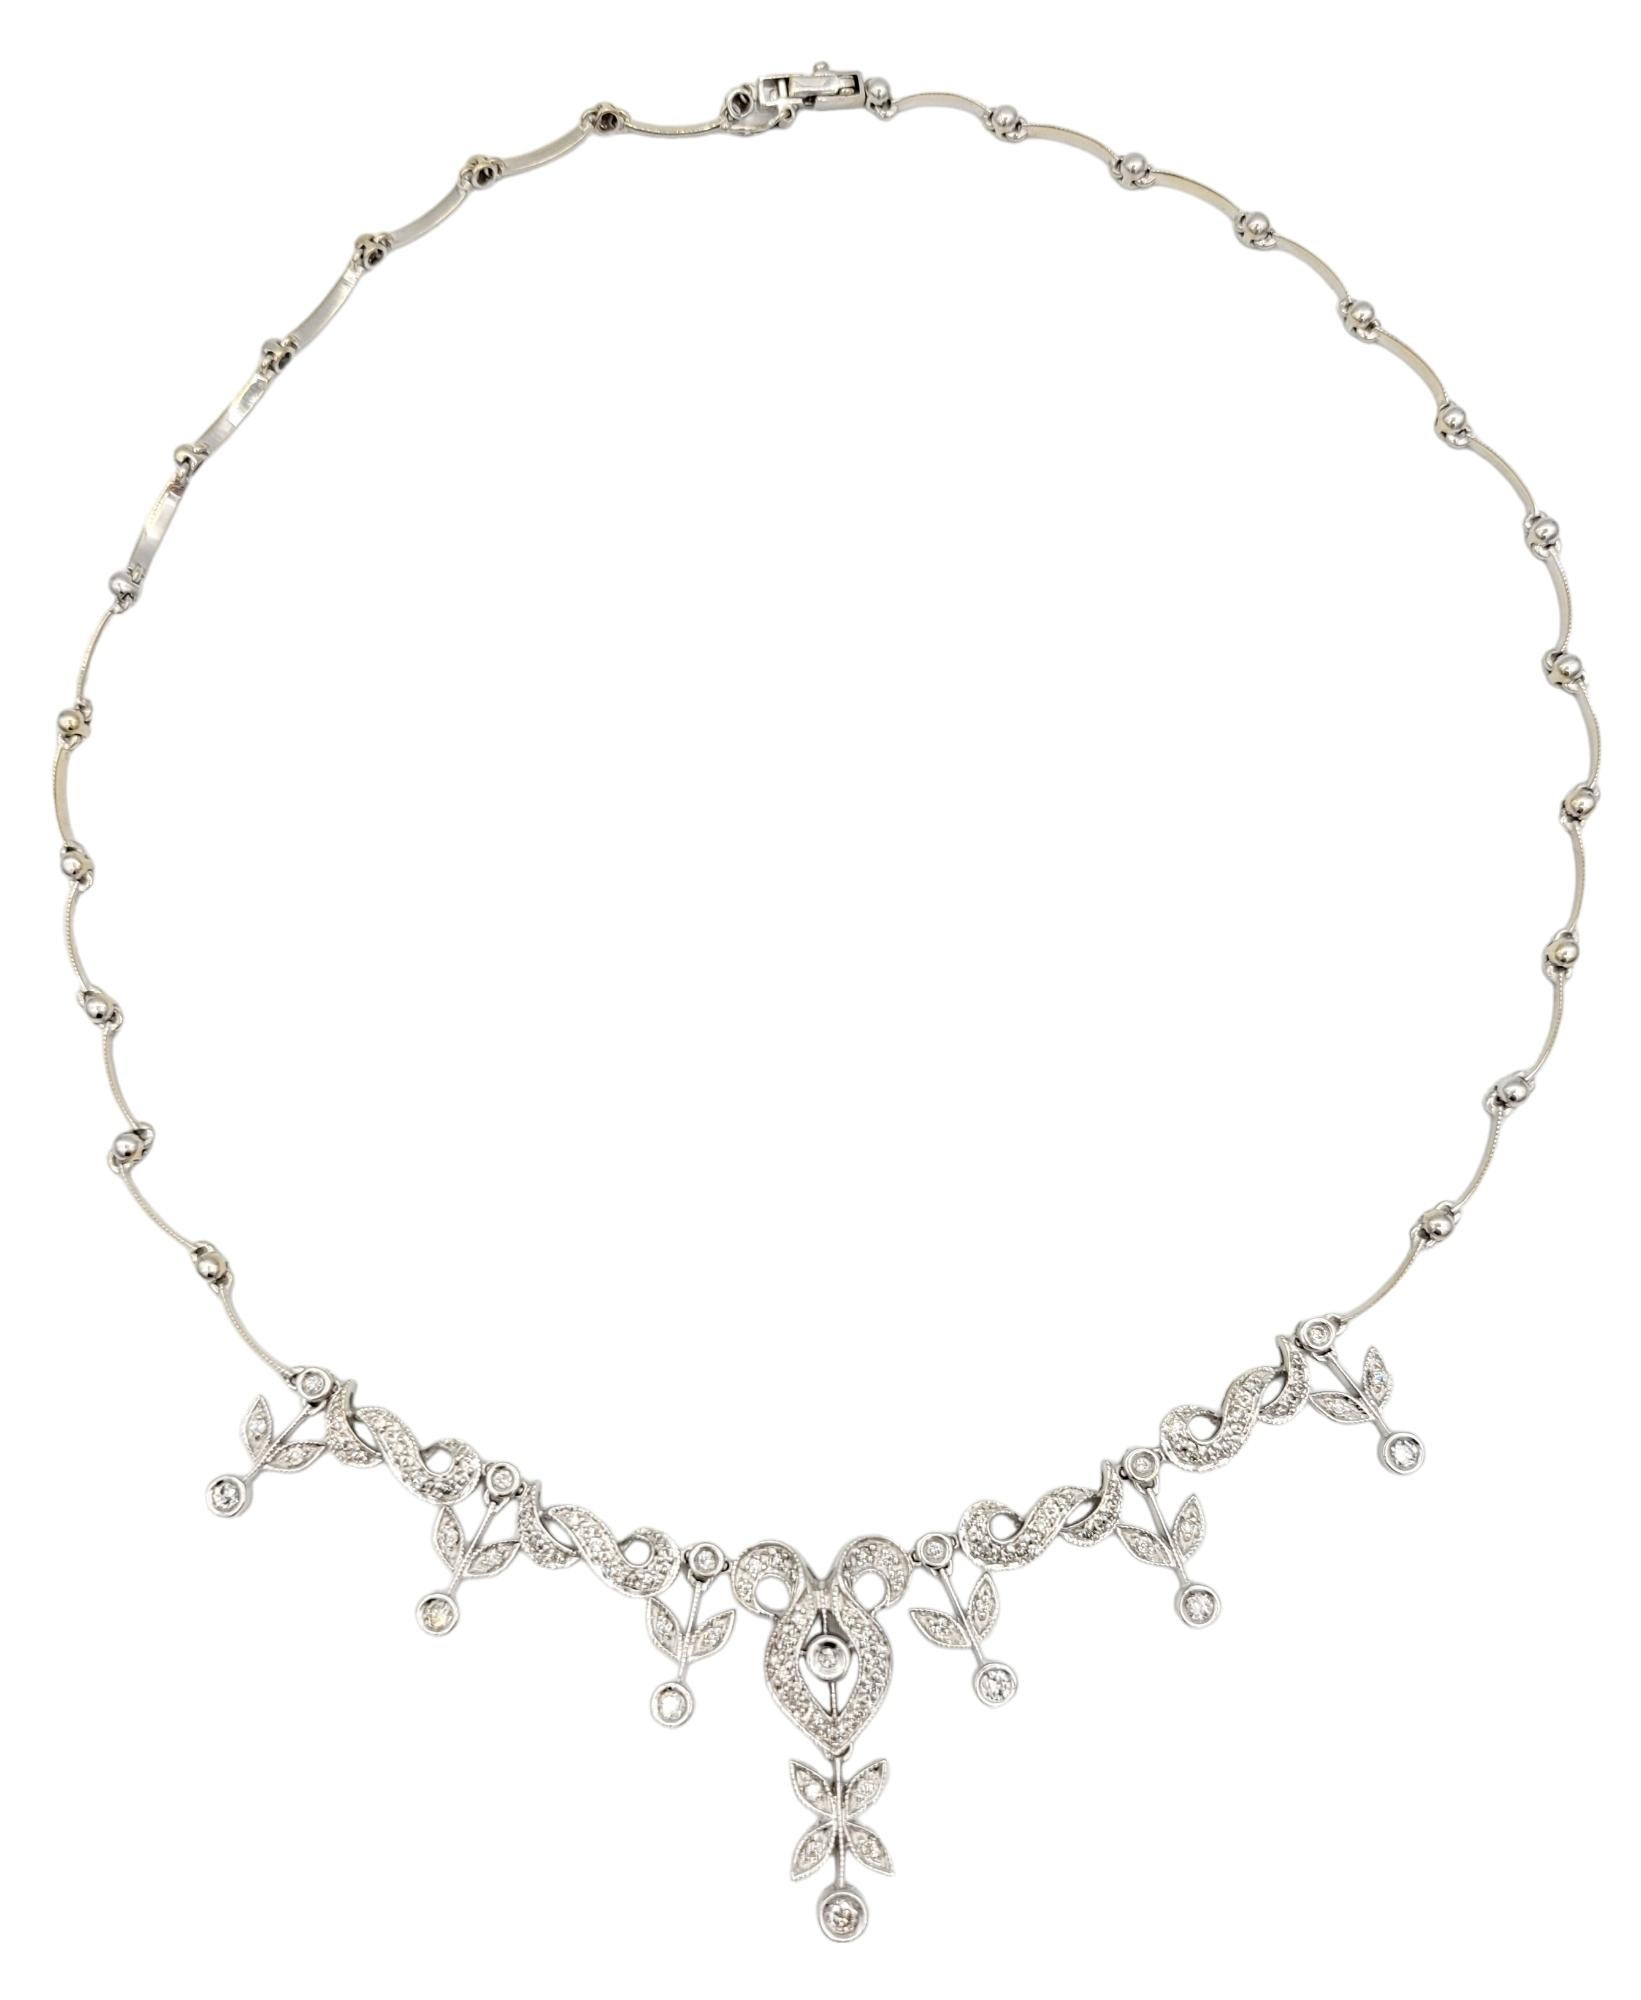 Notre collier pendentif scintillant, serti dans un luxueux or blanc 18 carats, est un bijou captivant et complexe. La caractéristique principale du collier est un magnifique design floral orné de diamants, ajoutant une touche de brillance et